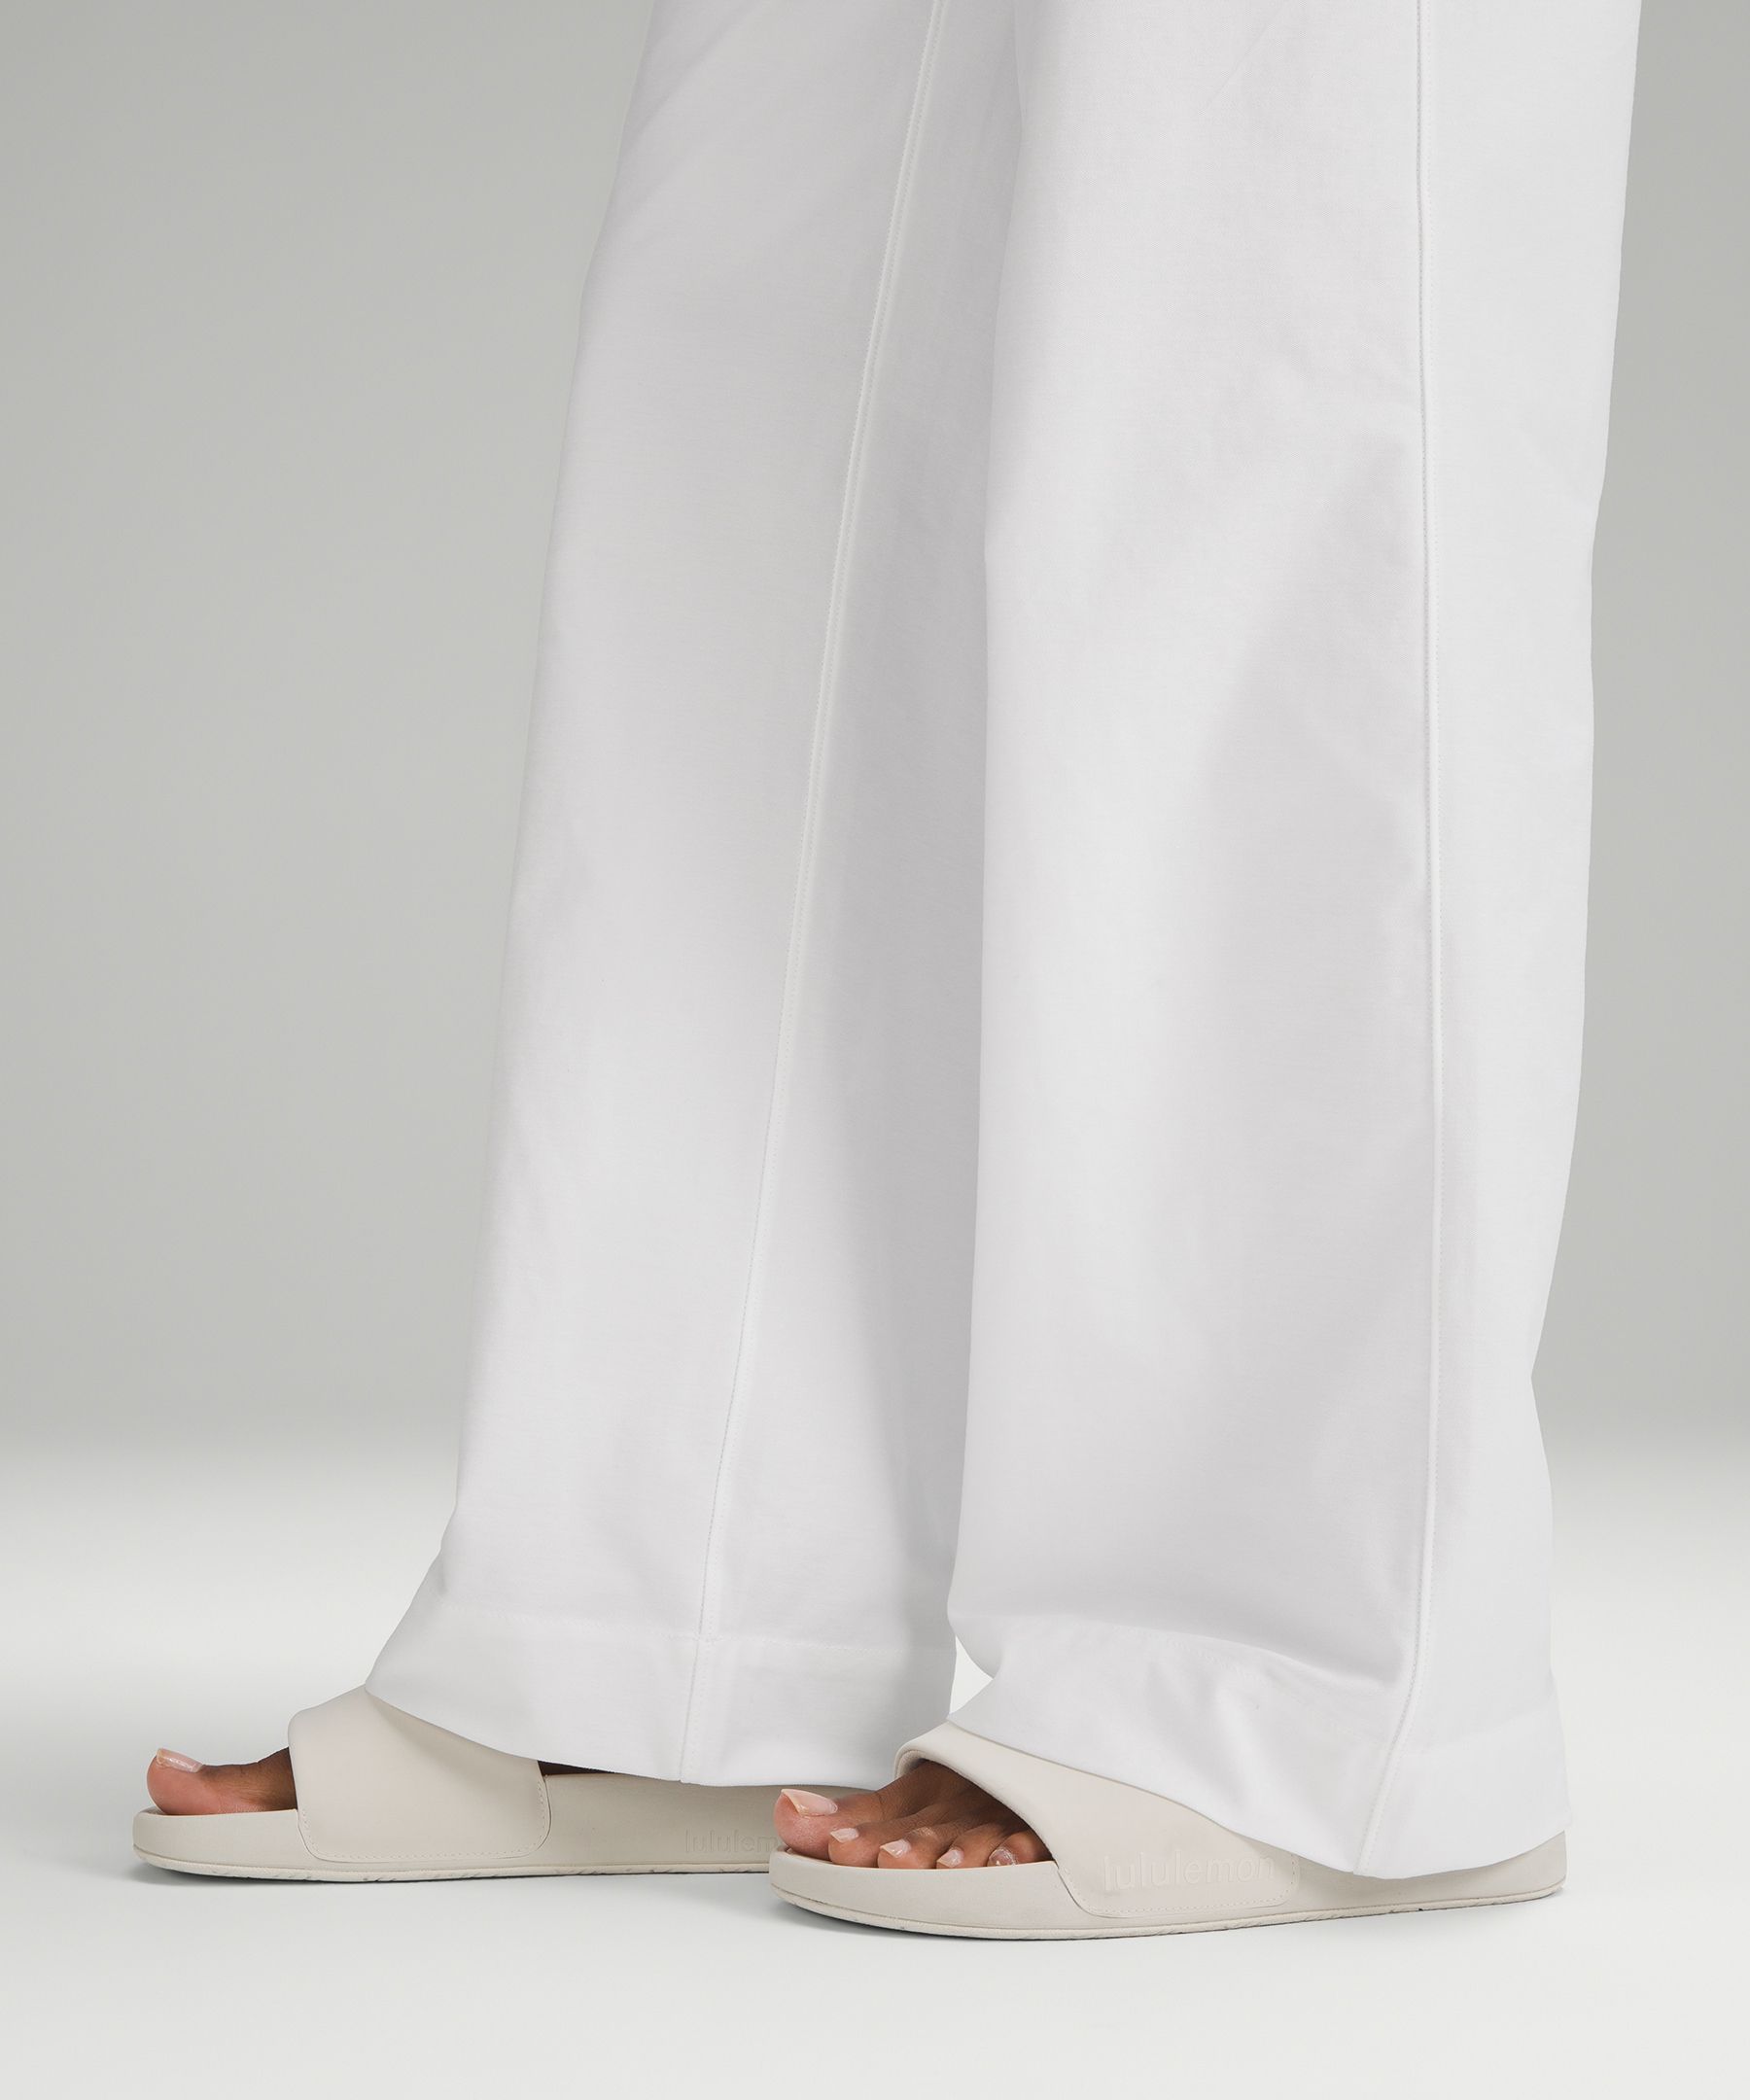 City Sleek 5 Pocket High-Rise Wide-Leg Pants Full Length Light